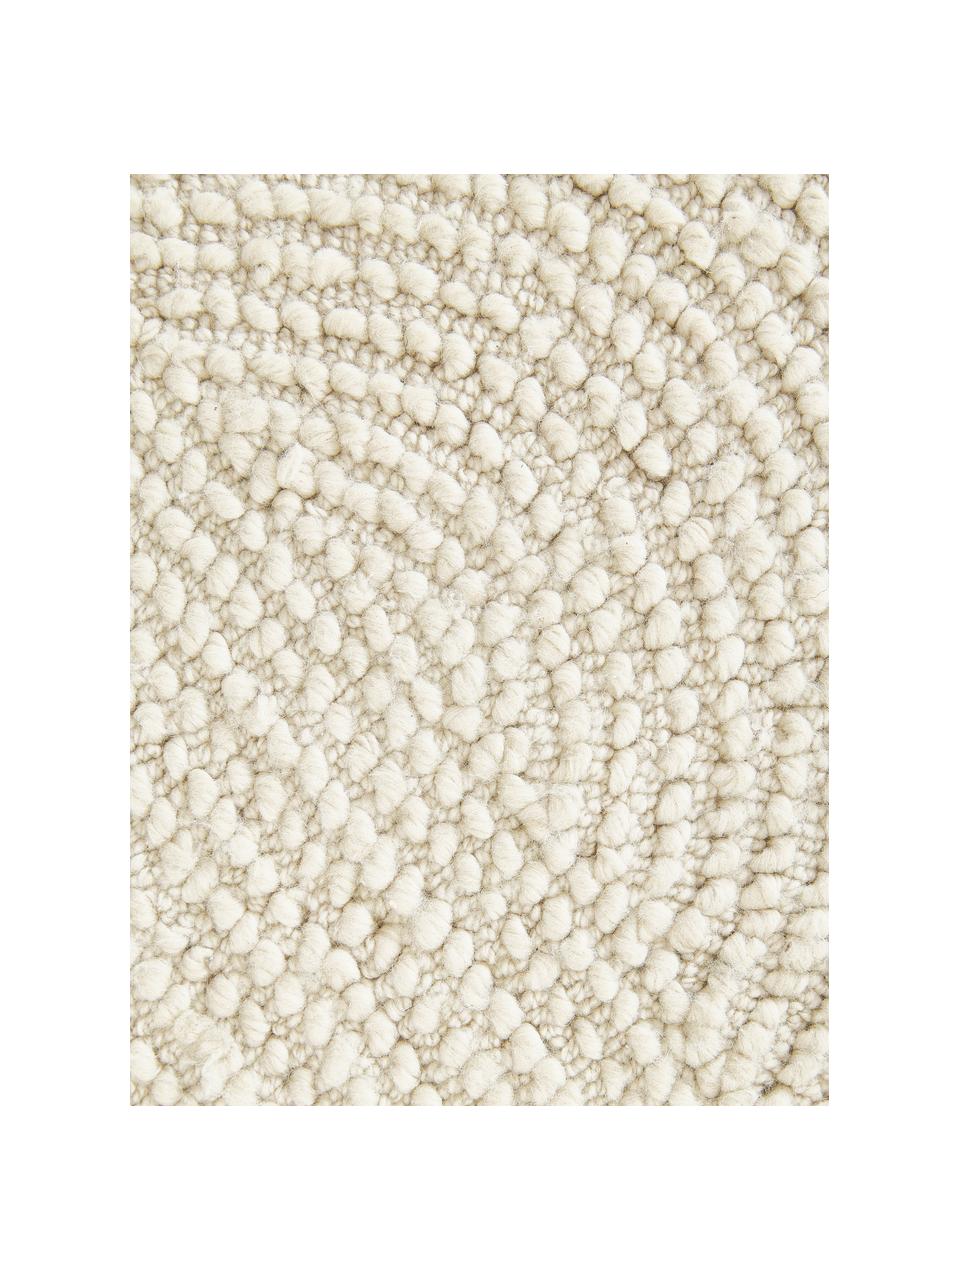 Handgetufteter Kurzflor-Teppich Eleni aus recycelten Materialien, Flor: 100 % recyceltes Polyeste, Off White, B 120 x L 180 cm (Größe S)